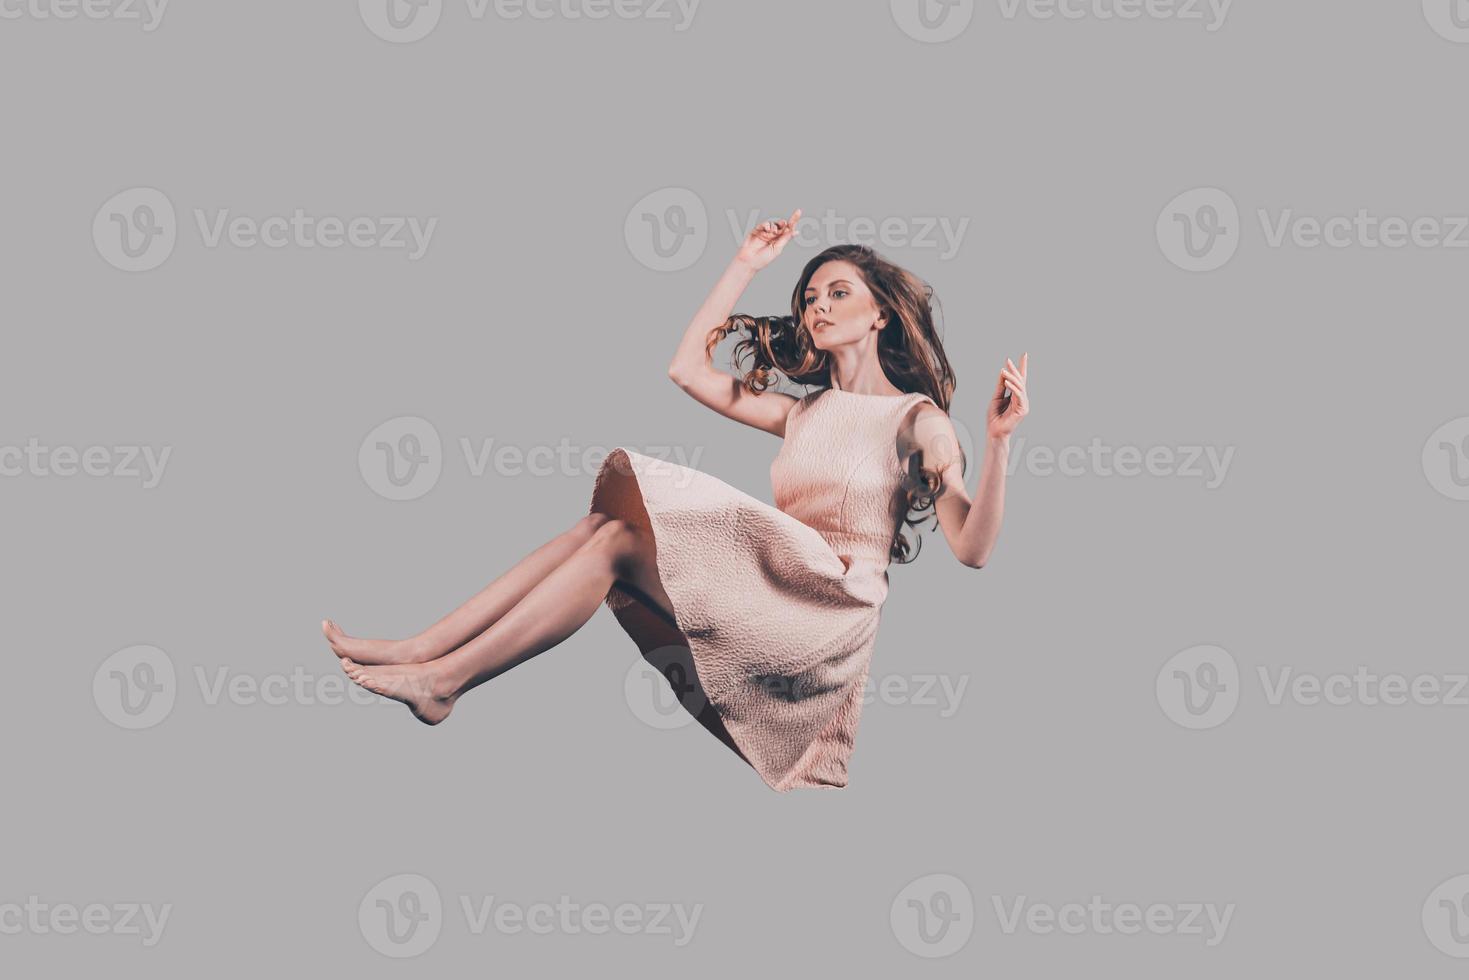 beauté en mouvement. prise de vue en studio d'une jeune femme attirante planant dans l'air photo